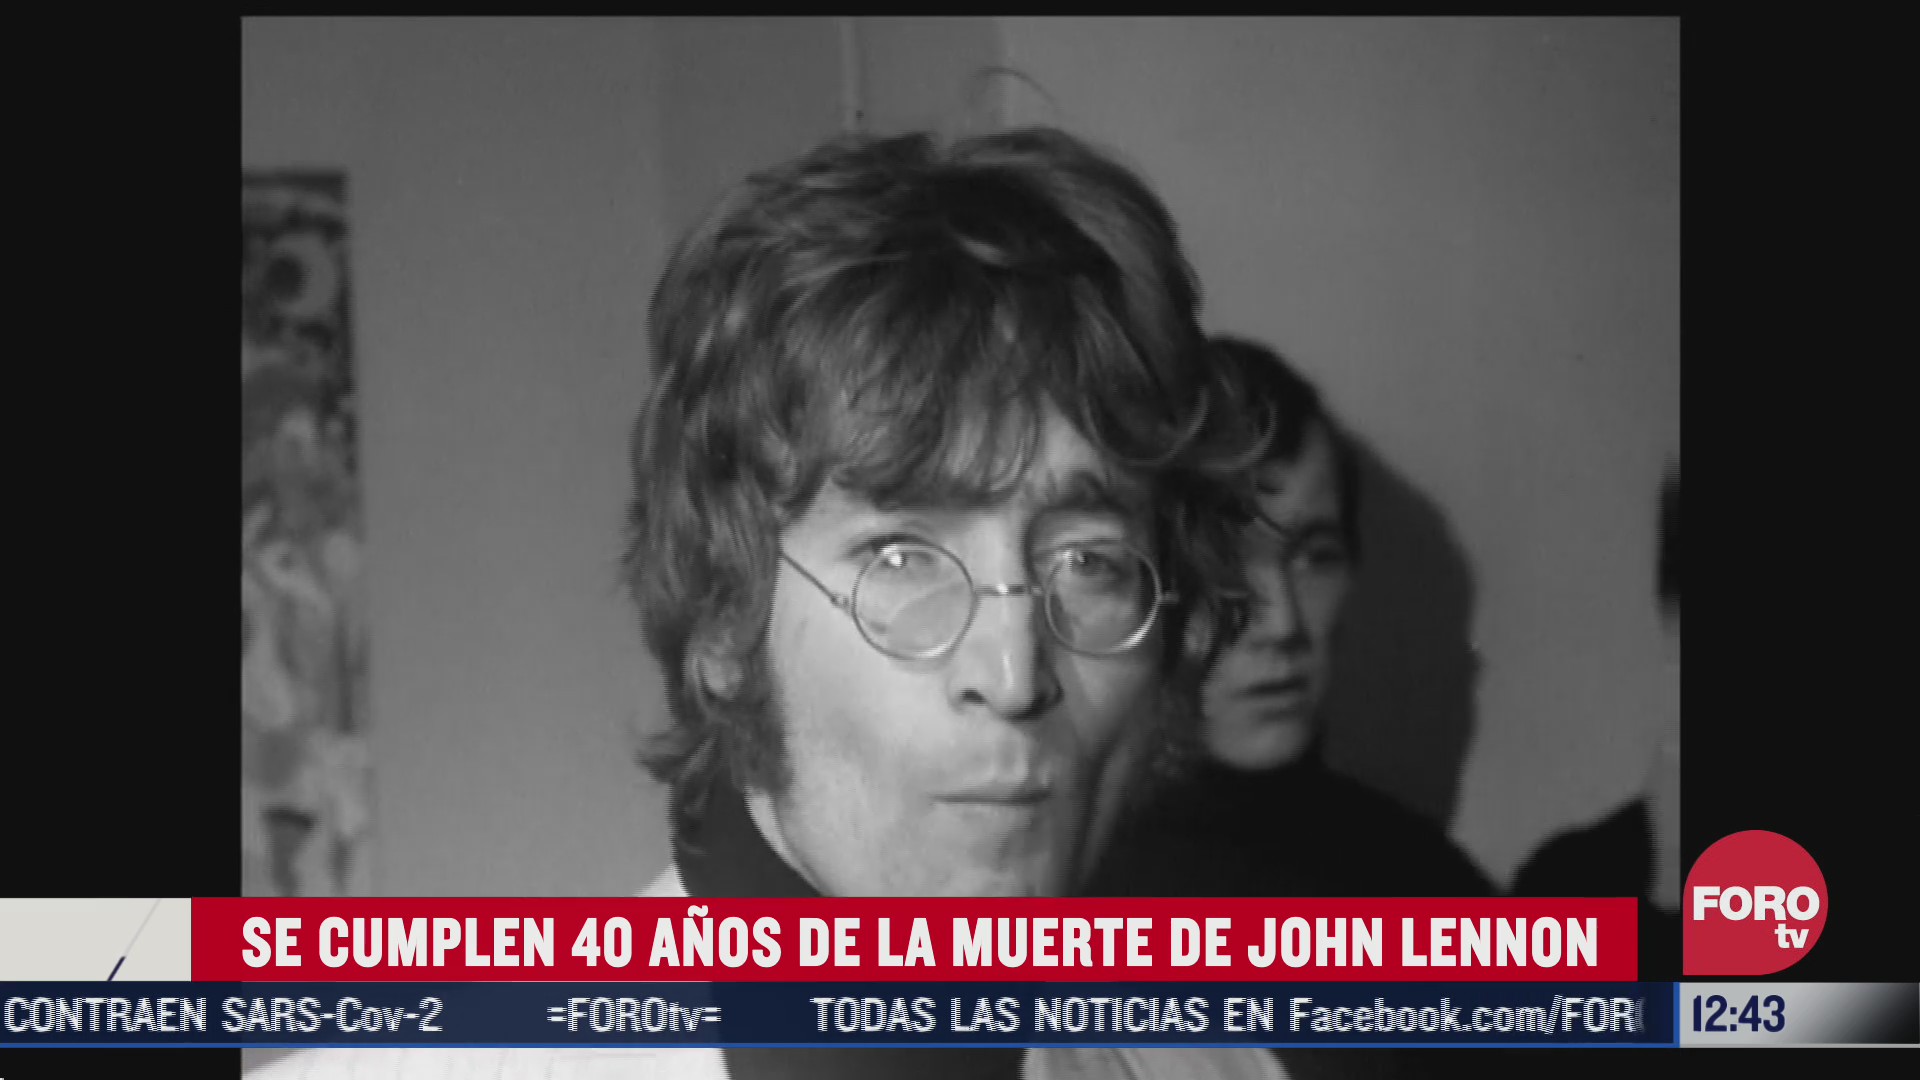 john lennon fue asesinado hace 40 anos